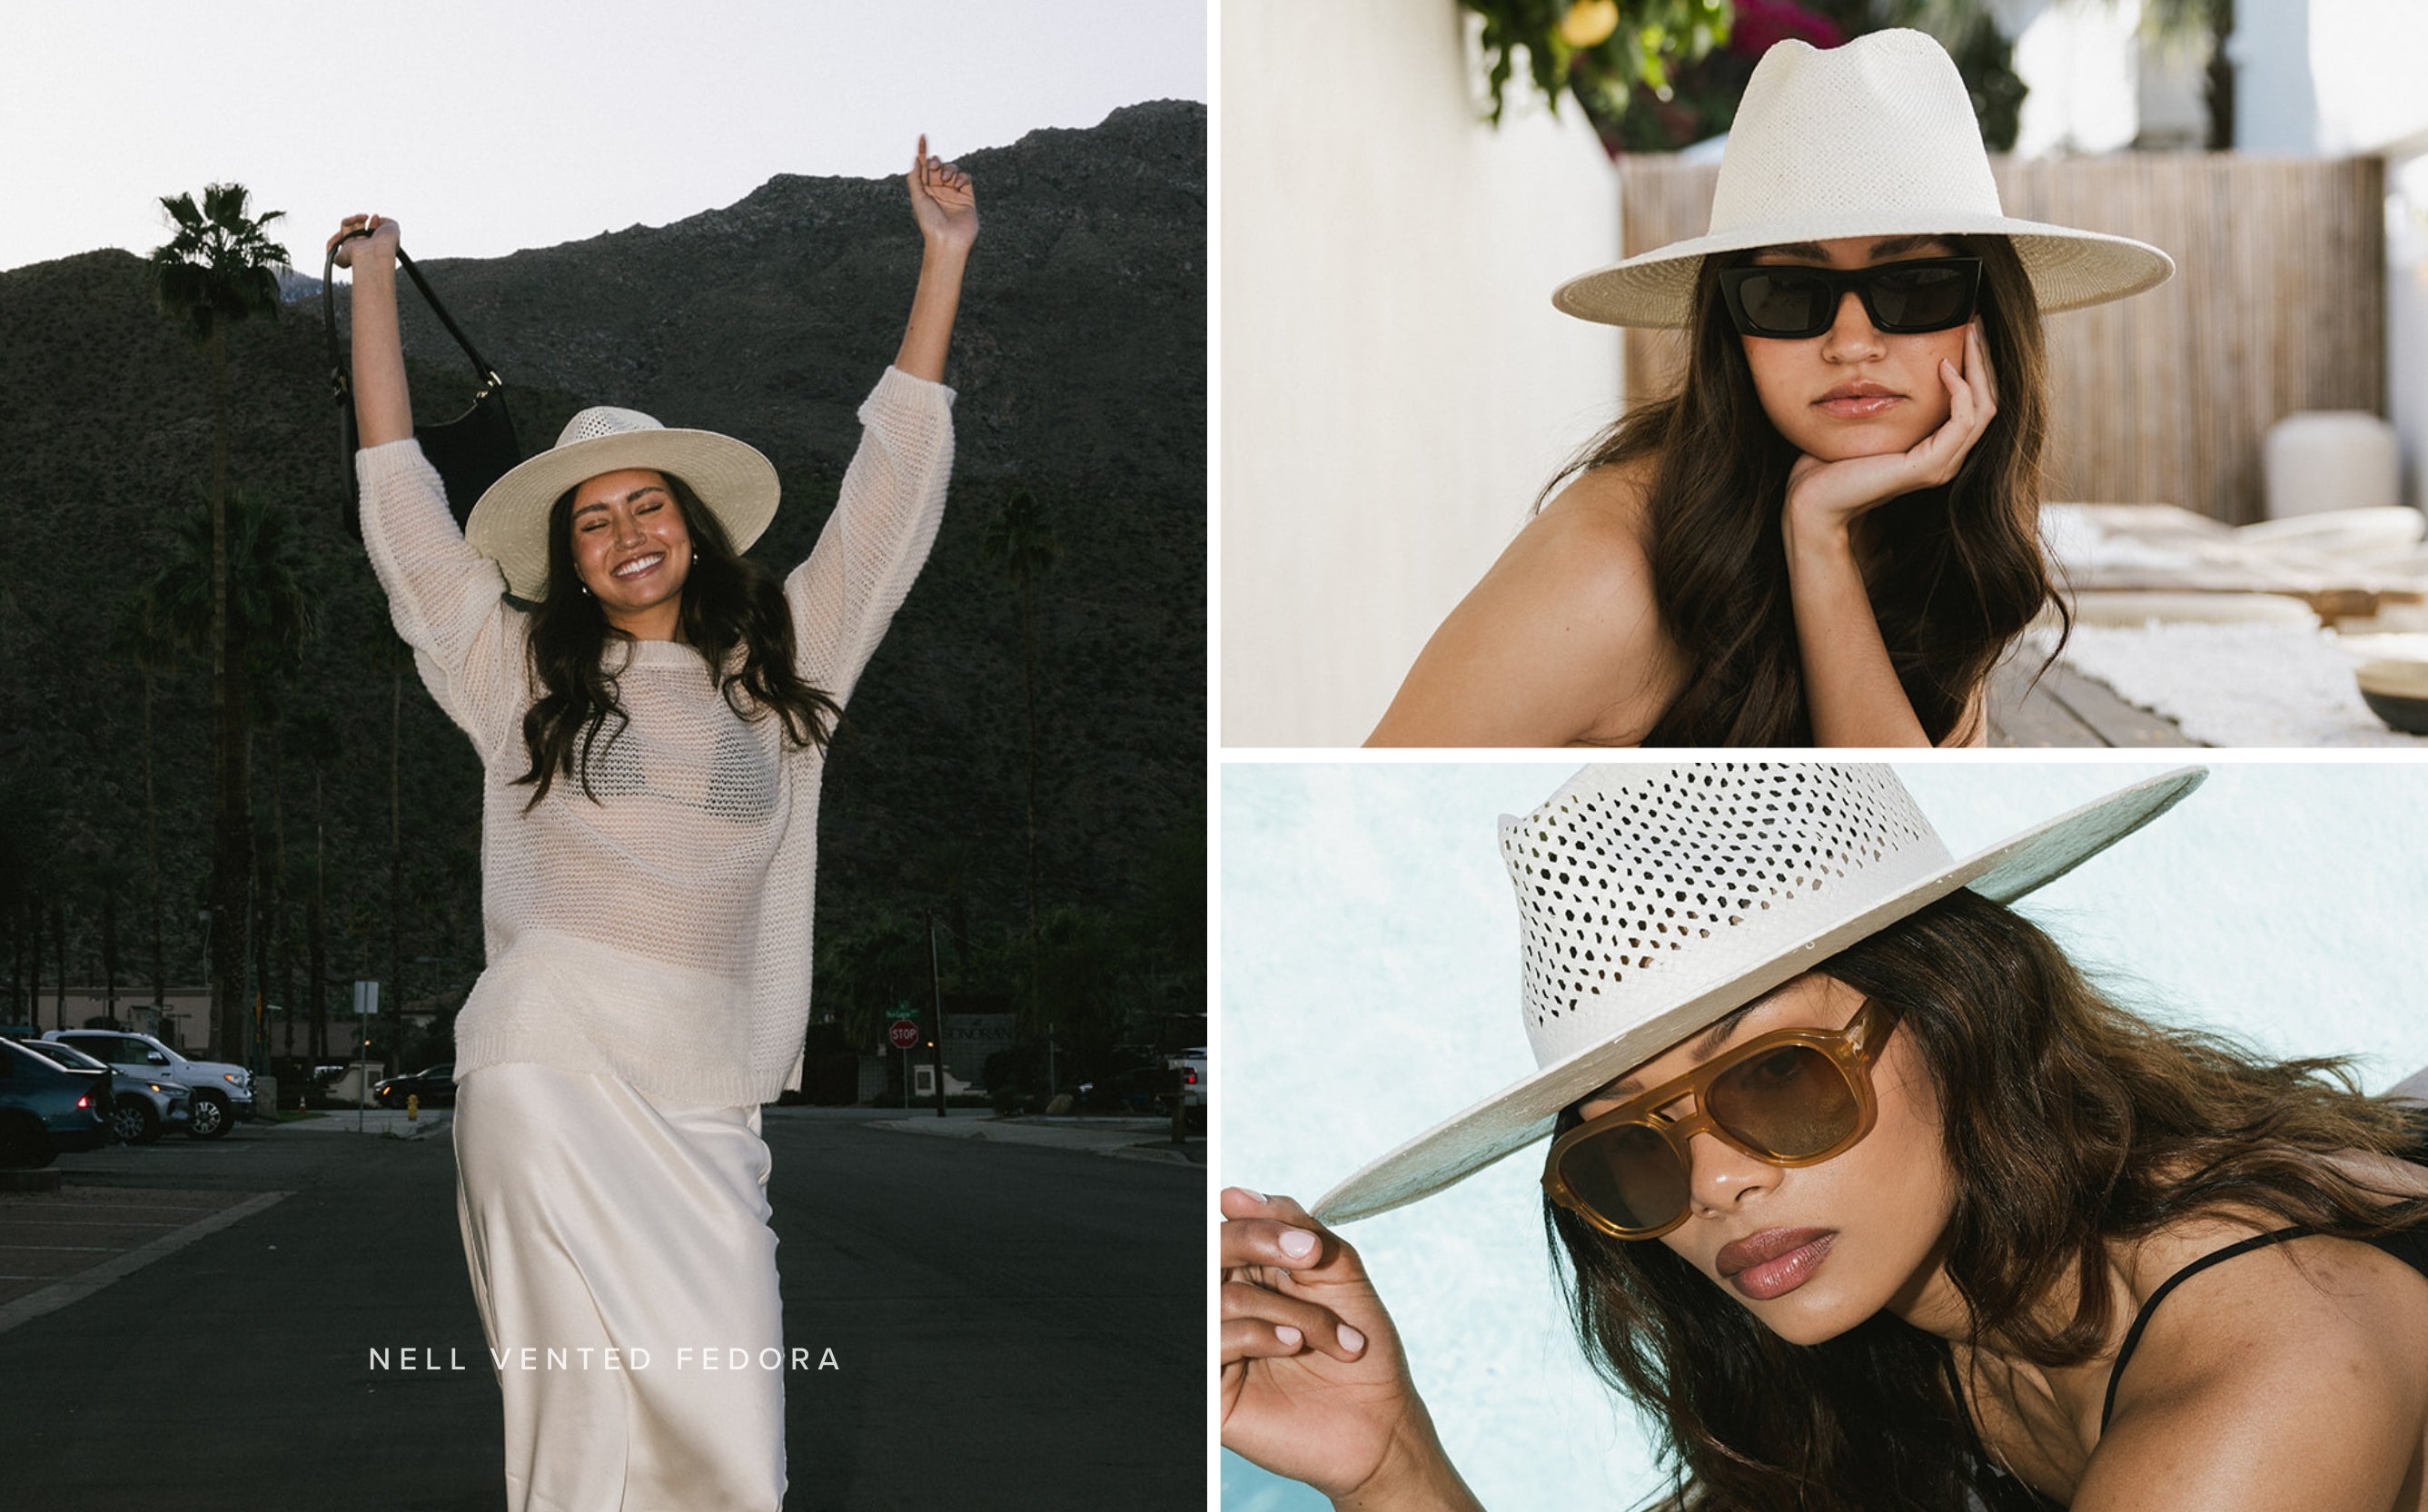 3 images of women wearing straw hats doing outdoor activities